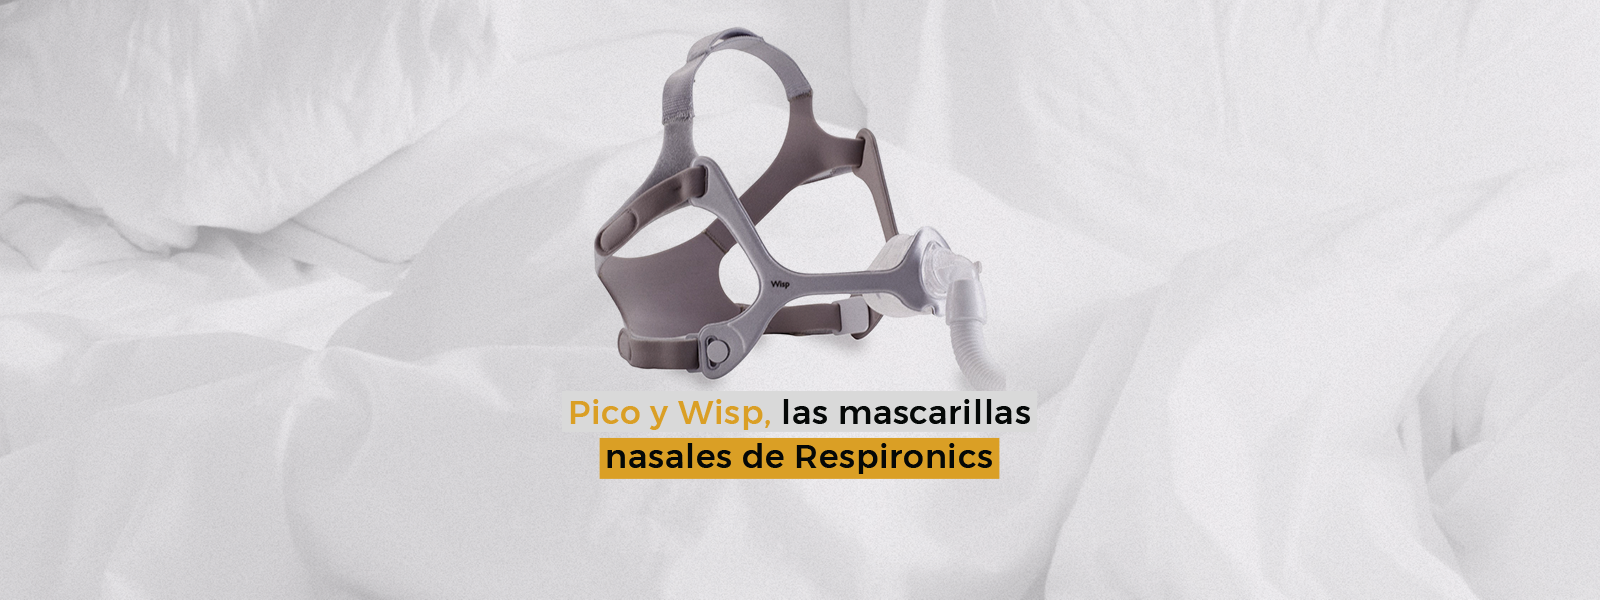 Pico y Wisp, las mascarillas nasales de Respironics